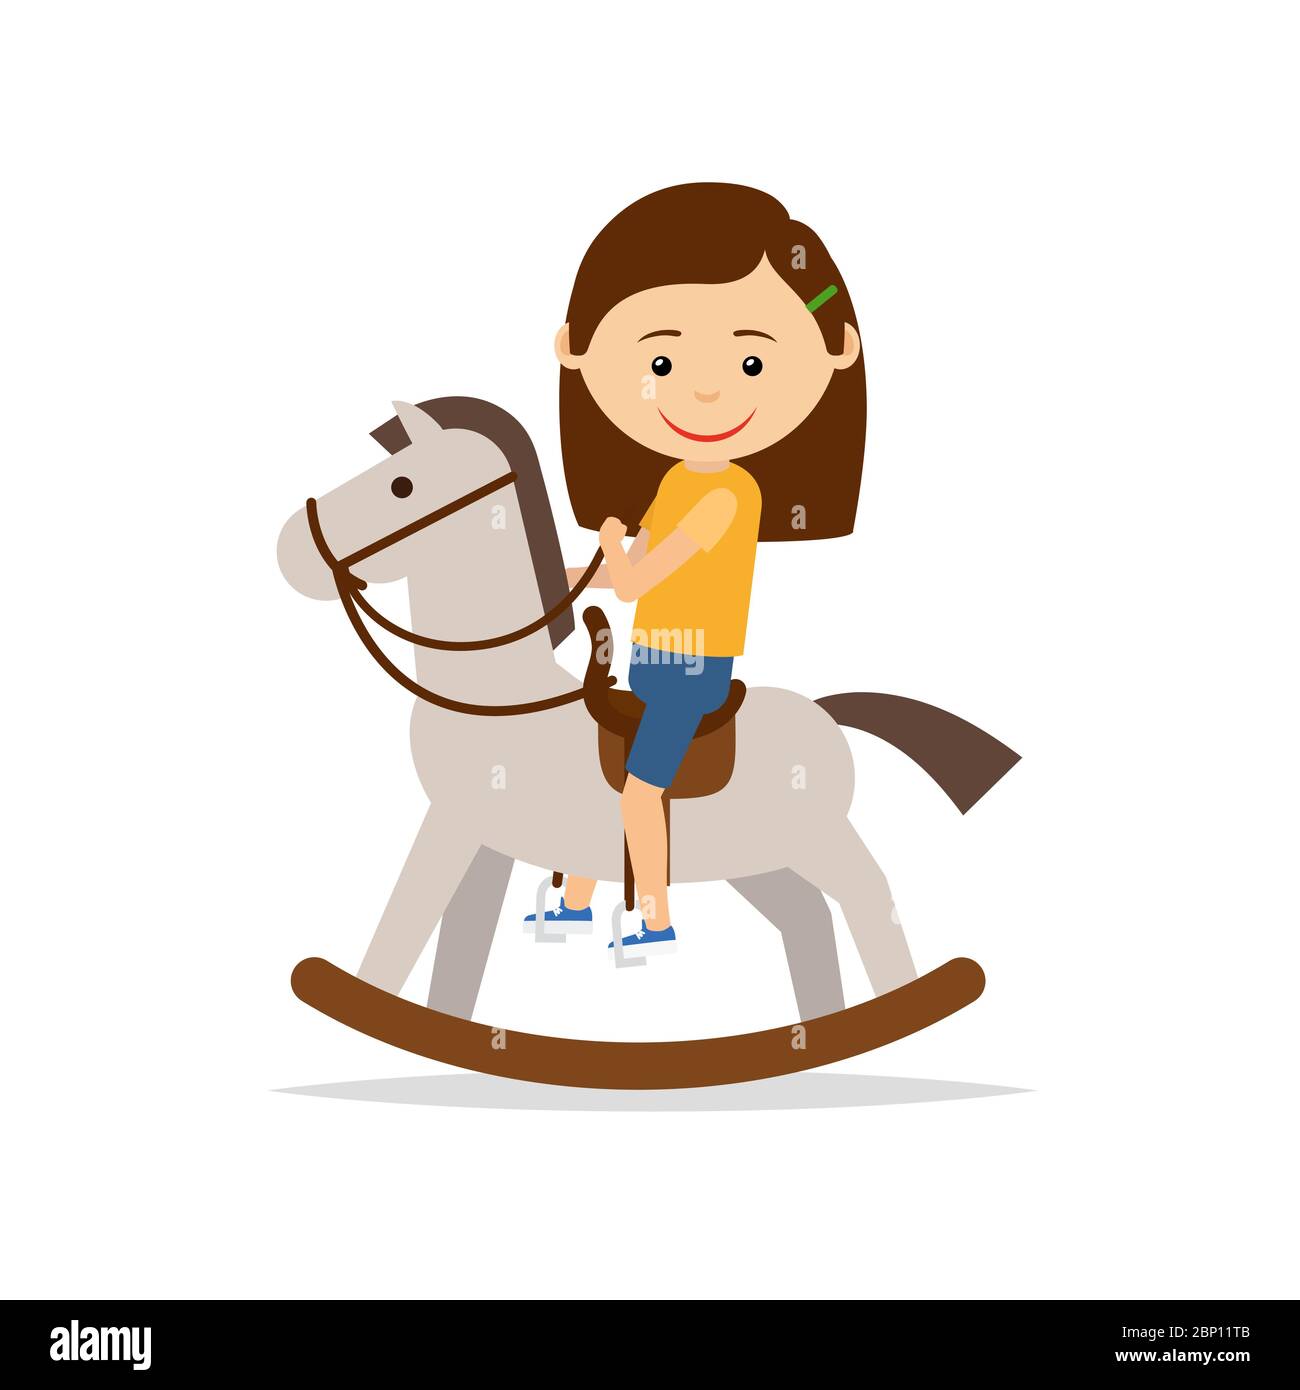 La bambina sta cavalcando un cavallo giocattolo, isolato su sfondo bianco. Illustrazione vettoriale Illustrazione Vettoriale